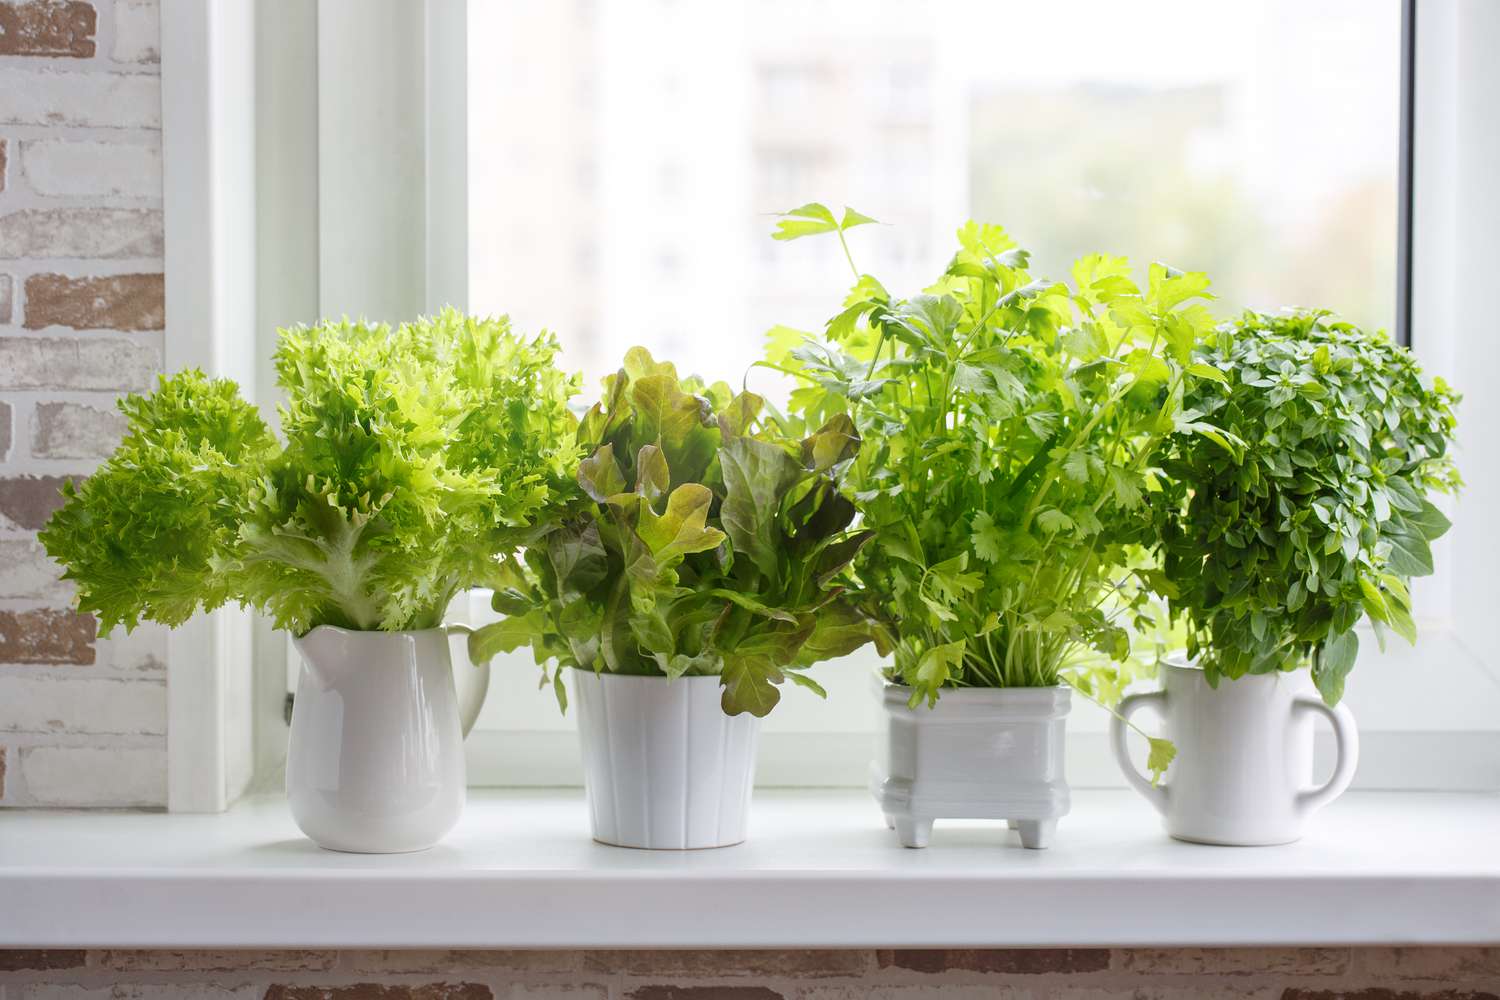 Herbes aromatiques culinaires fraîches en pots blancs sur un rebord de fenêtre. Laitue, céleri à feuilles et basilic à petites feuilles. Potager d'herbes aromatiques.